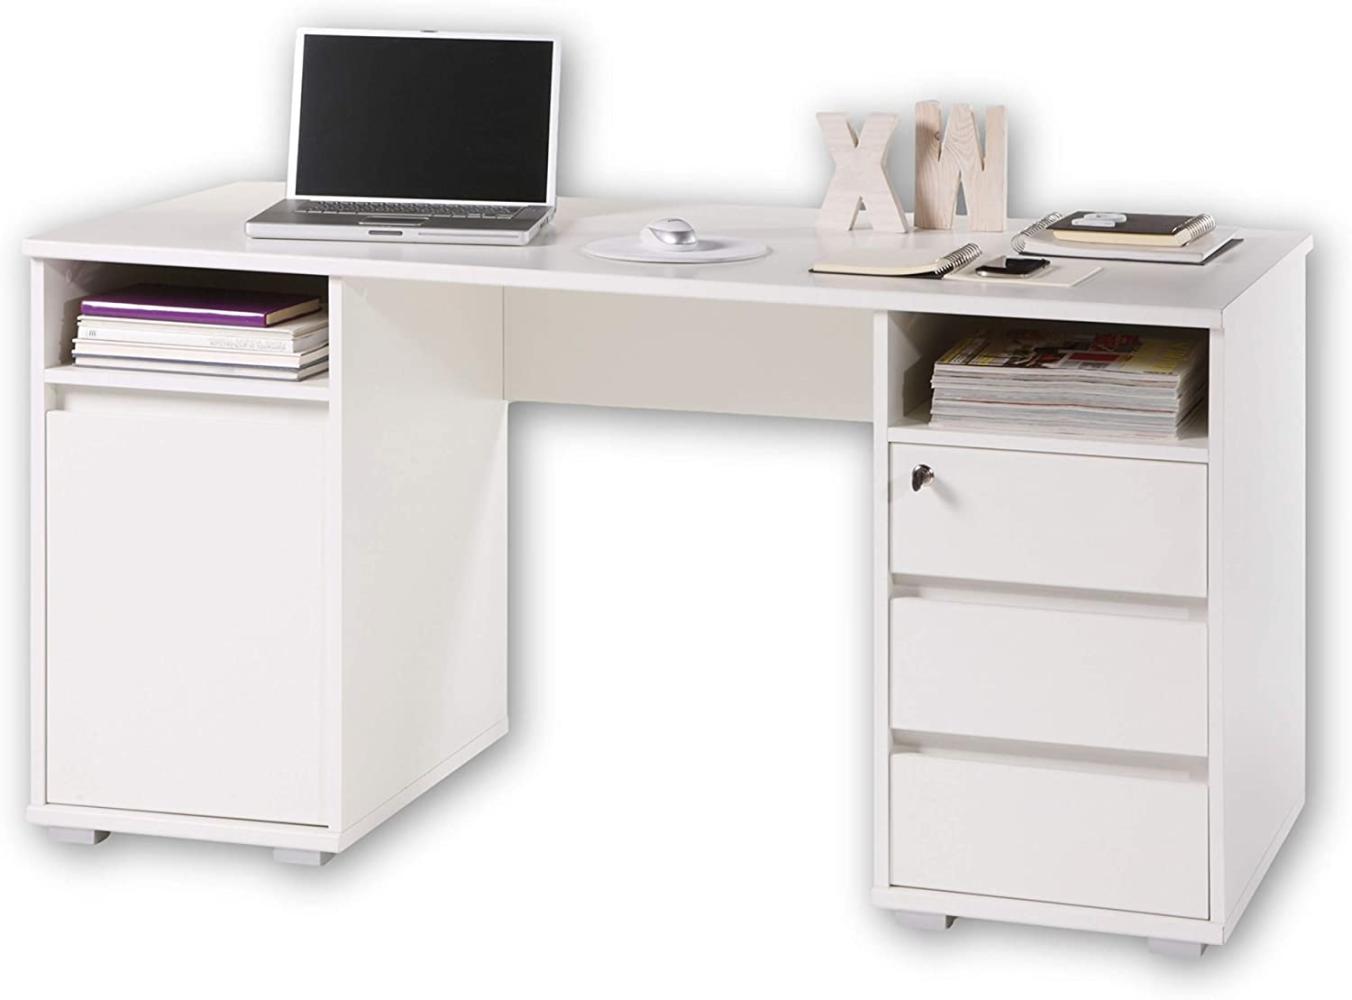 PRIMUS 2 Schreibtisch mit Schubladen, Weiß - Bürotisch Computertisch fürs Homeoffice mit Stauraum und offenen Ablagefächern - 145 x 74 x 65 cm (B/H/T) Bild 1